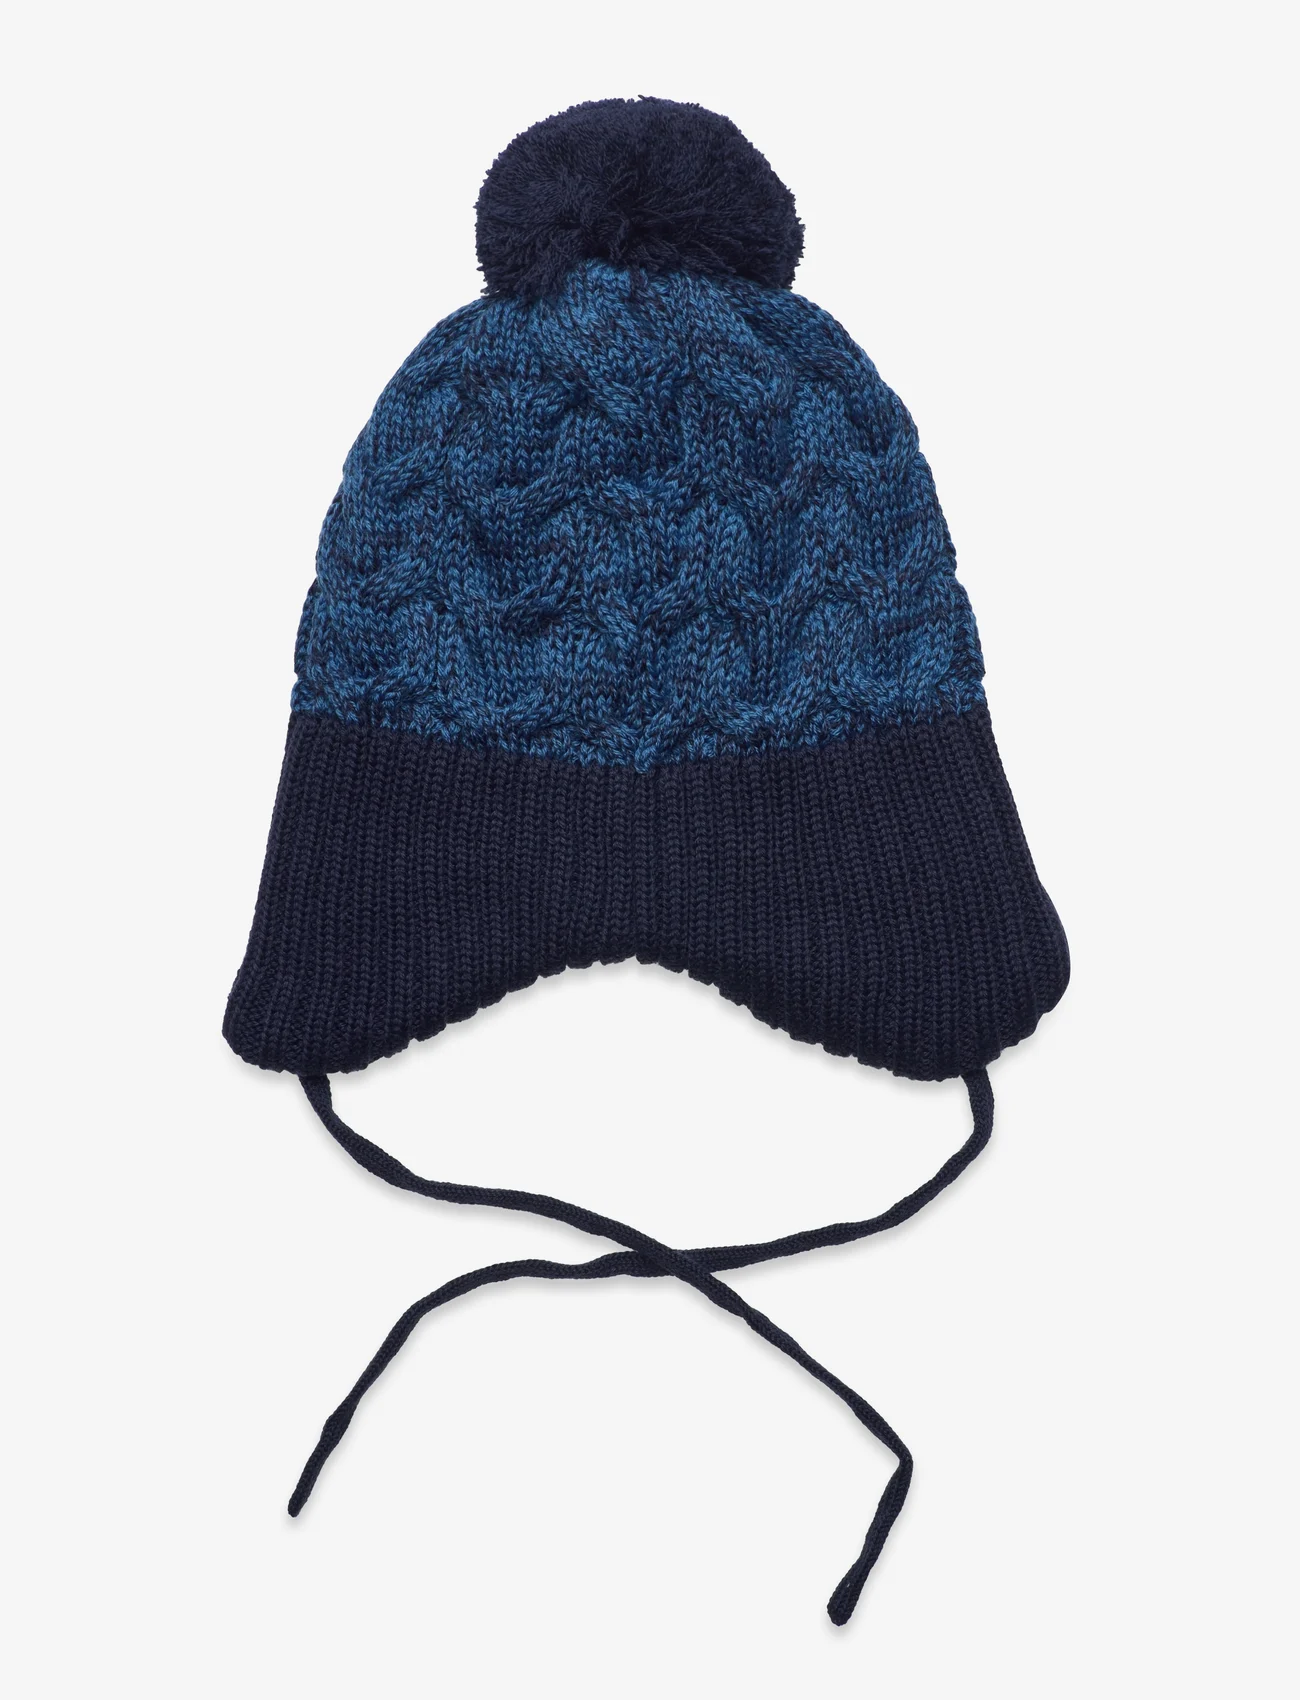 Reima - Beanie, Paljakka - winter hats - navy - 1